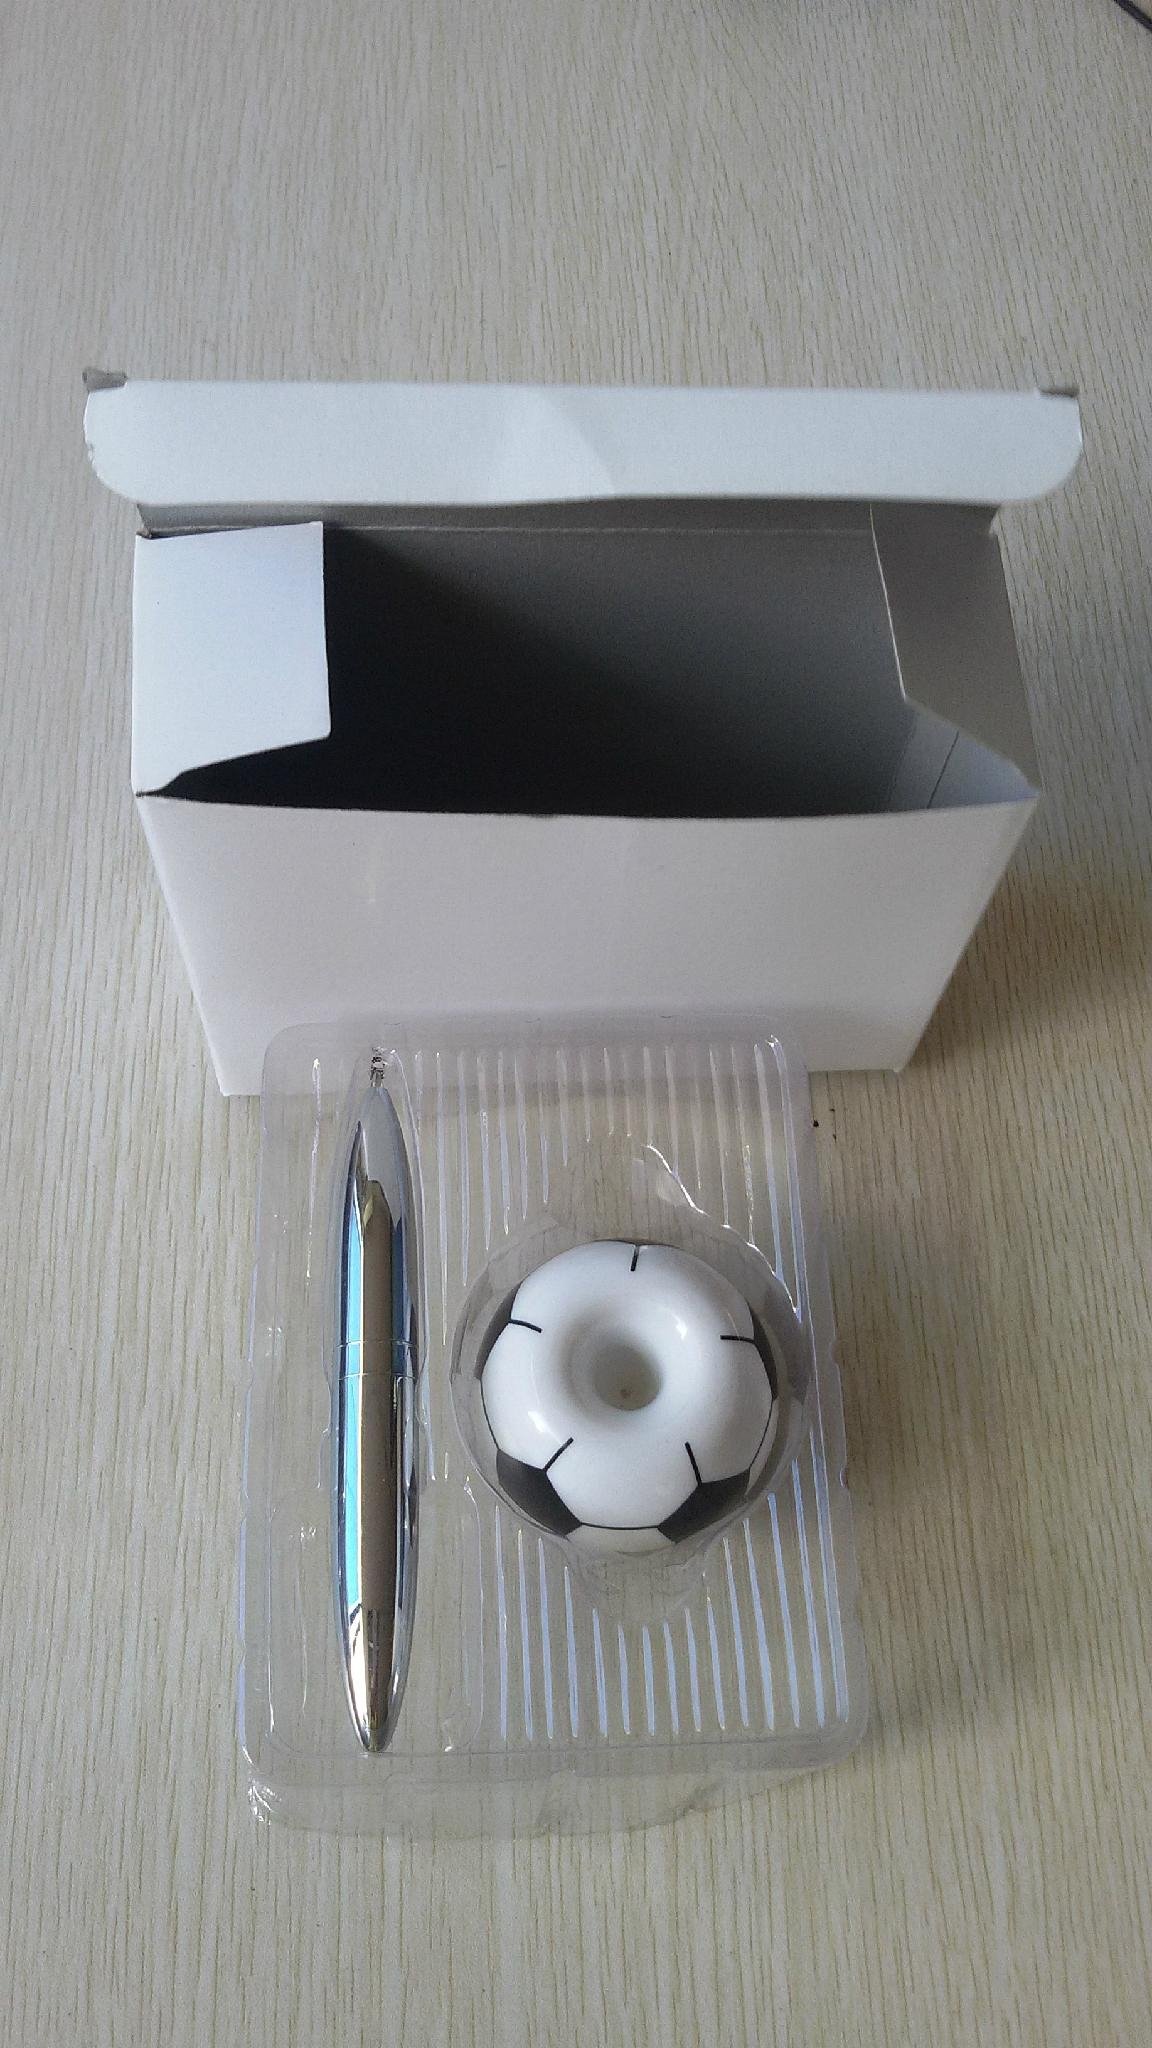 足球底座磁浮筆 創意磁性台筆 時尚磁性圓珠筆 最佳足球賽禮品 2